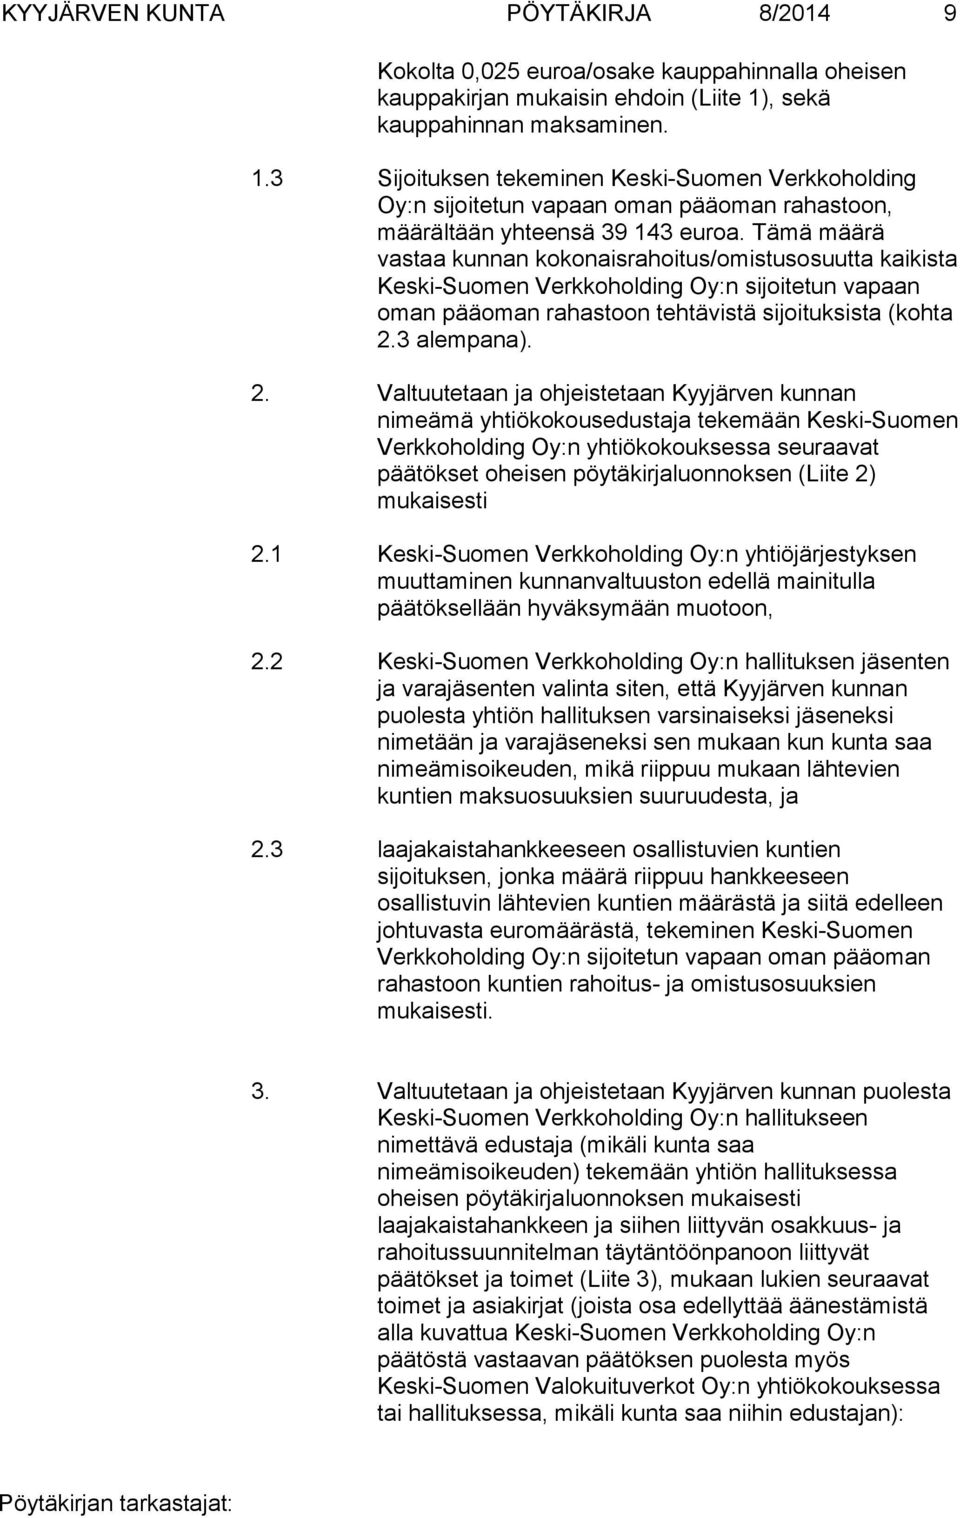 Tämä määrä vastaa kunnan kokonaisrahoitus/omistusosuutta kaikista Keski-Suomen Verkkoholding Oy:n sijoitetun vapaan oman pääoman rahastoon tehtävistä sijoituksista (kohta 2.